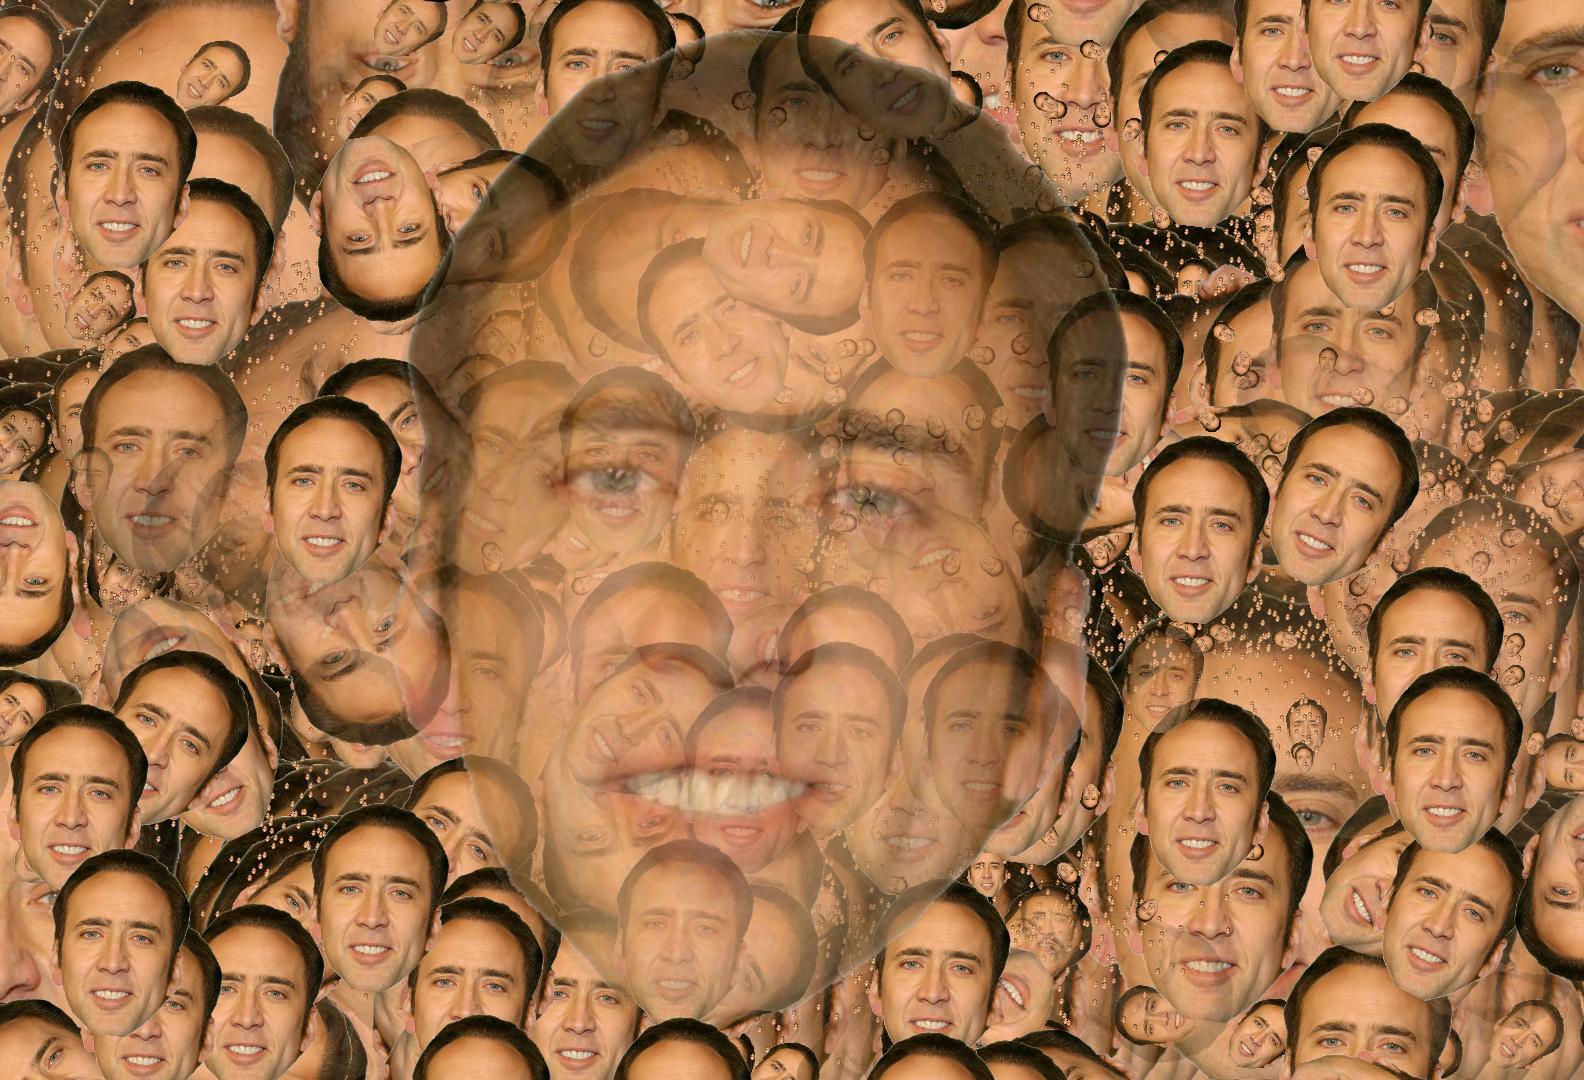 Nicolas Cage Wallpaper, Live Nicolas Cage Pics (35), PC, Fungyung.com